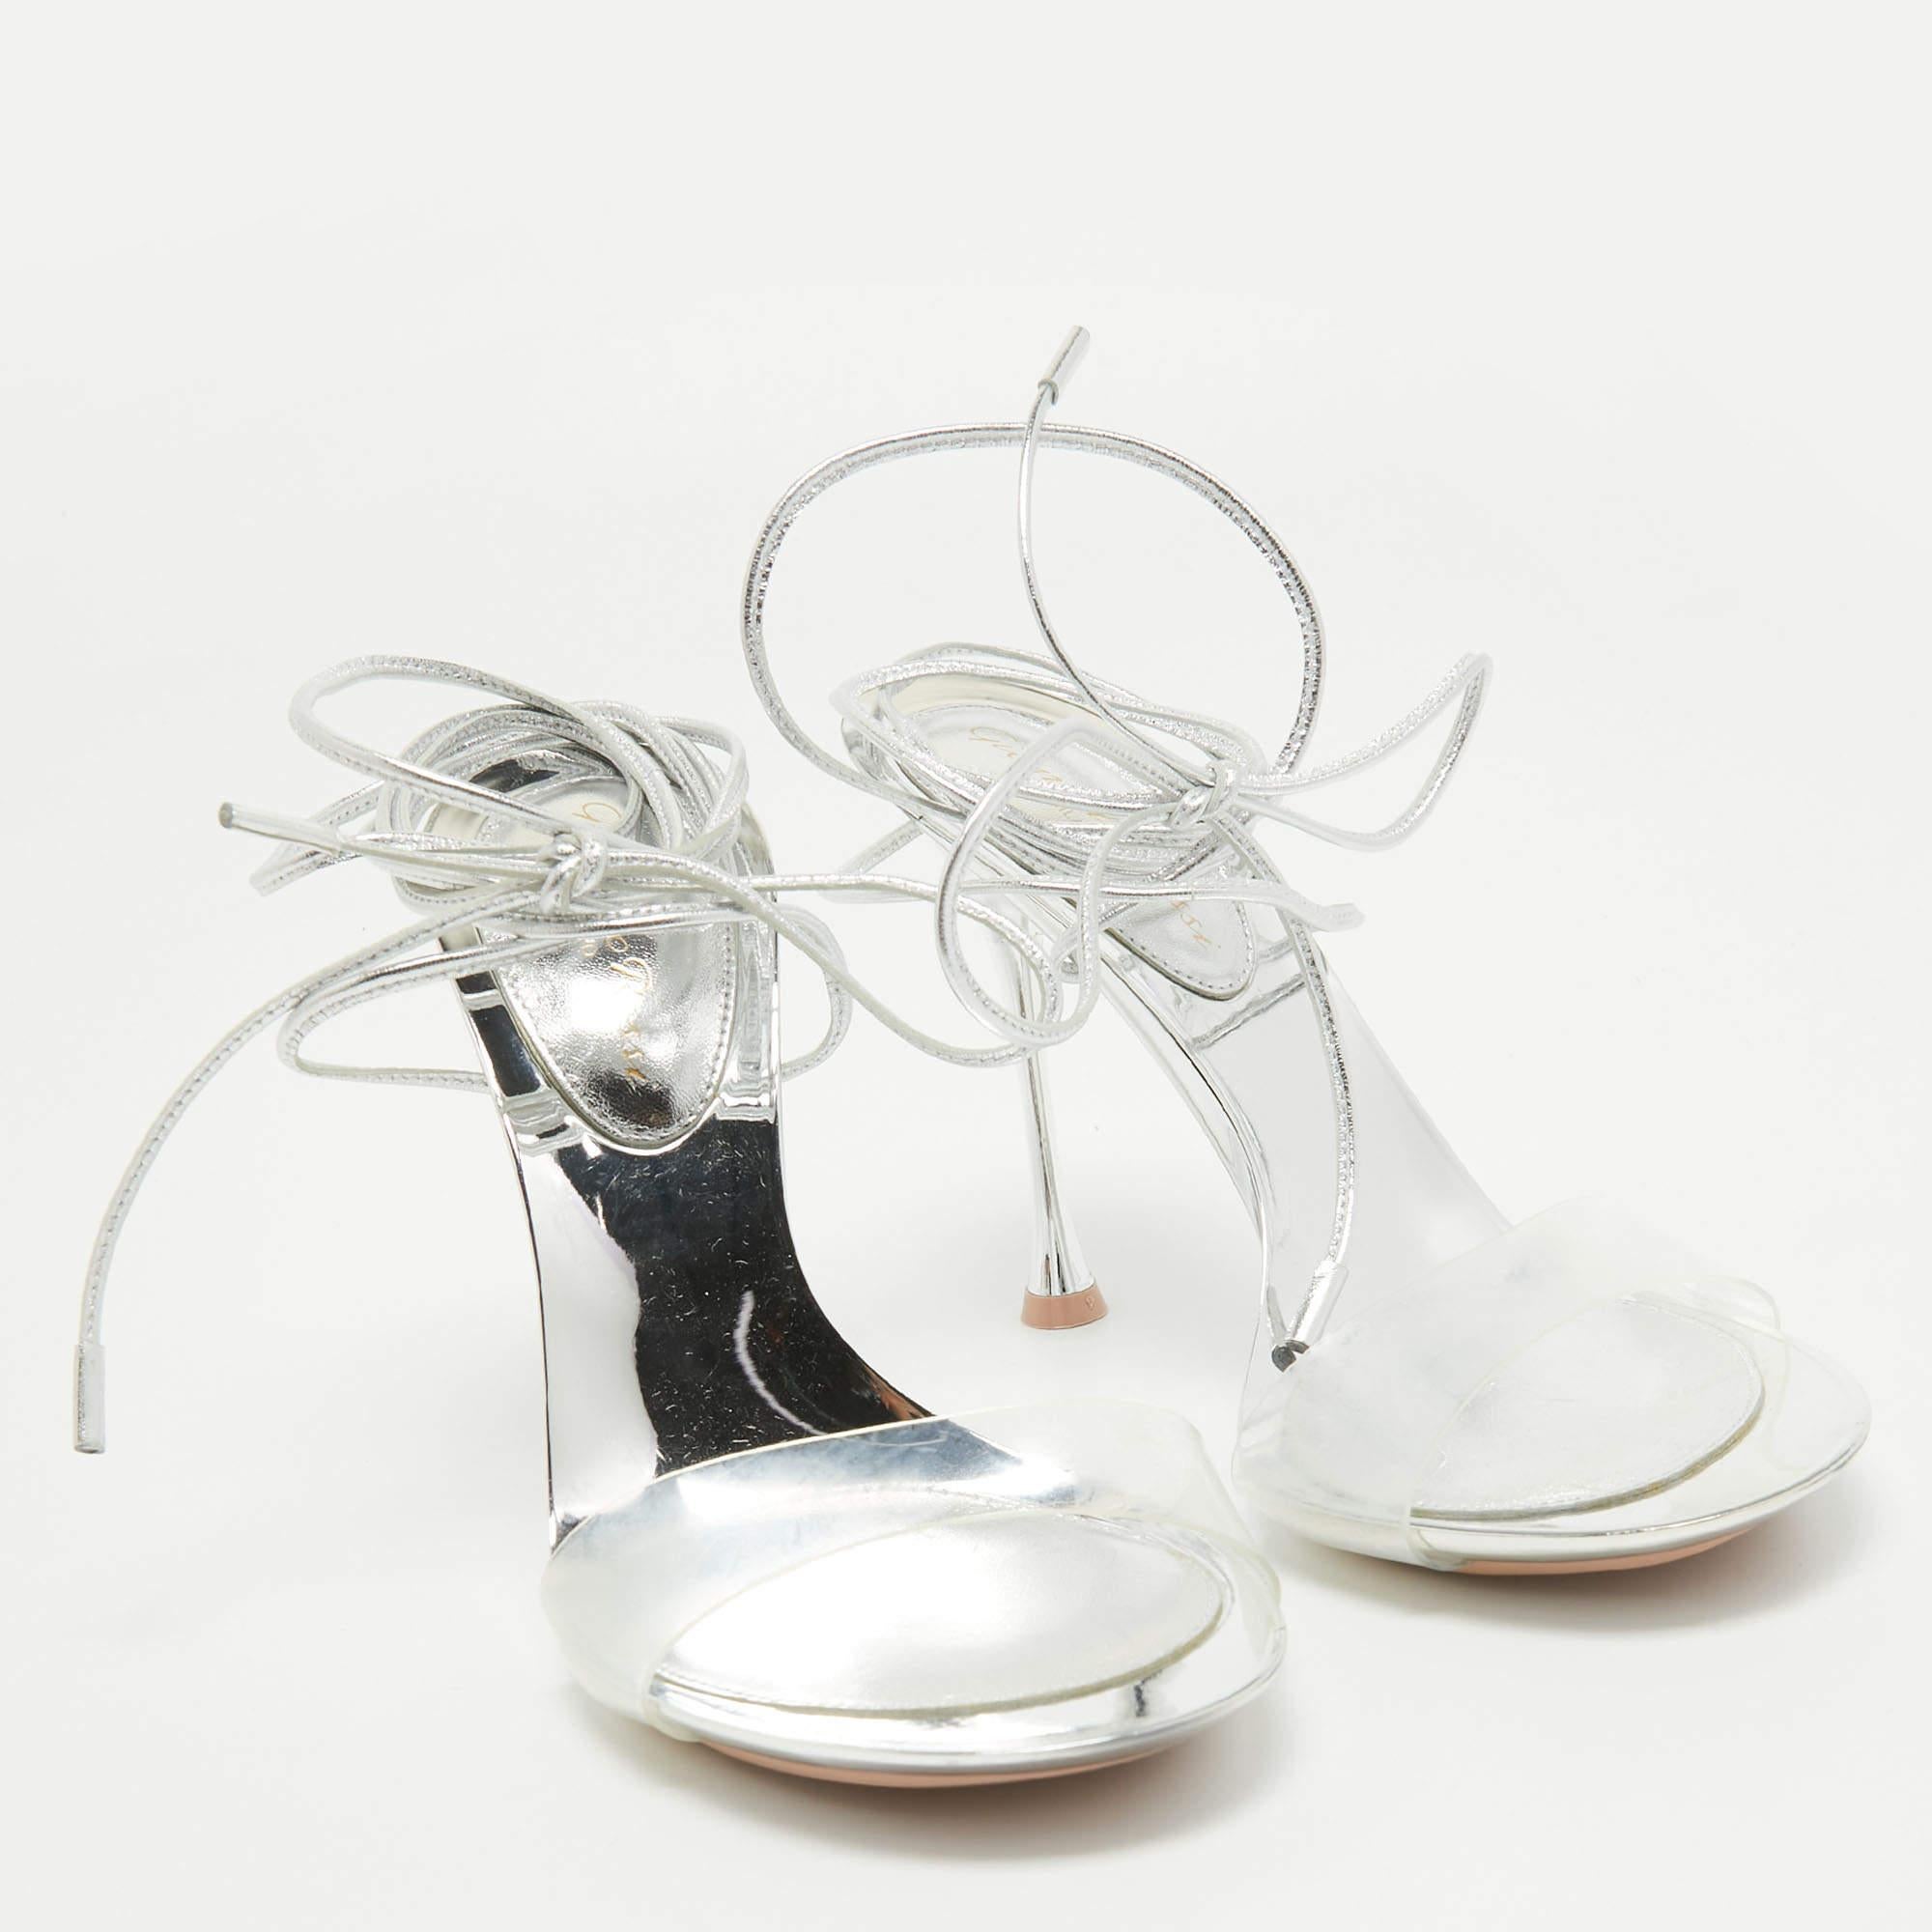 Confectionnées par Gianvito Rossi, ces sandales exquises associent sans heurt le PVC transparent et le cuir souple. Les délicats liens à la cheville ajoutent une touche de féminité, tandis que le design épuré respire la modernité. Parfaites pour